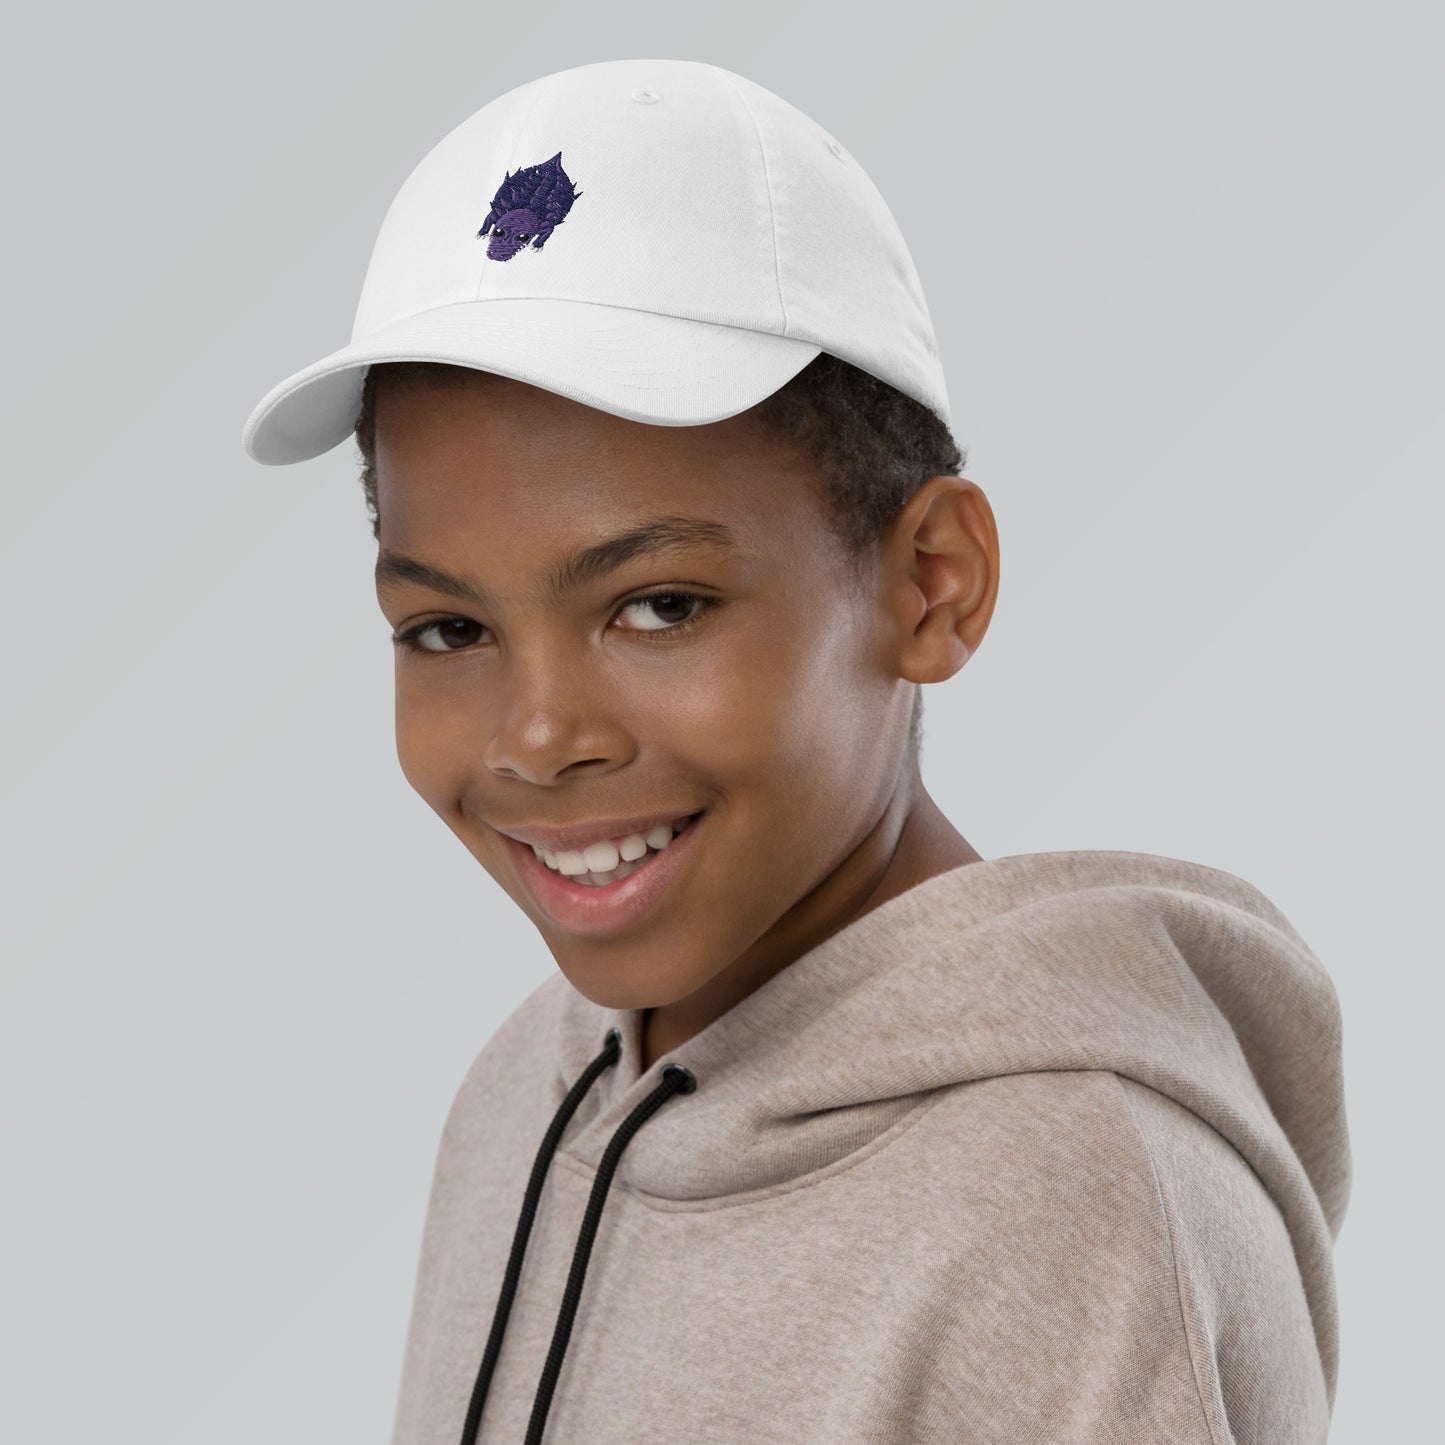 Mope kaiju rex youth baseball cap